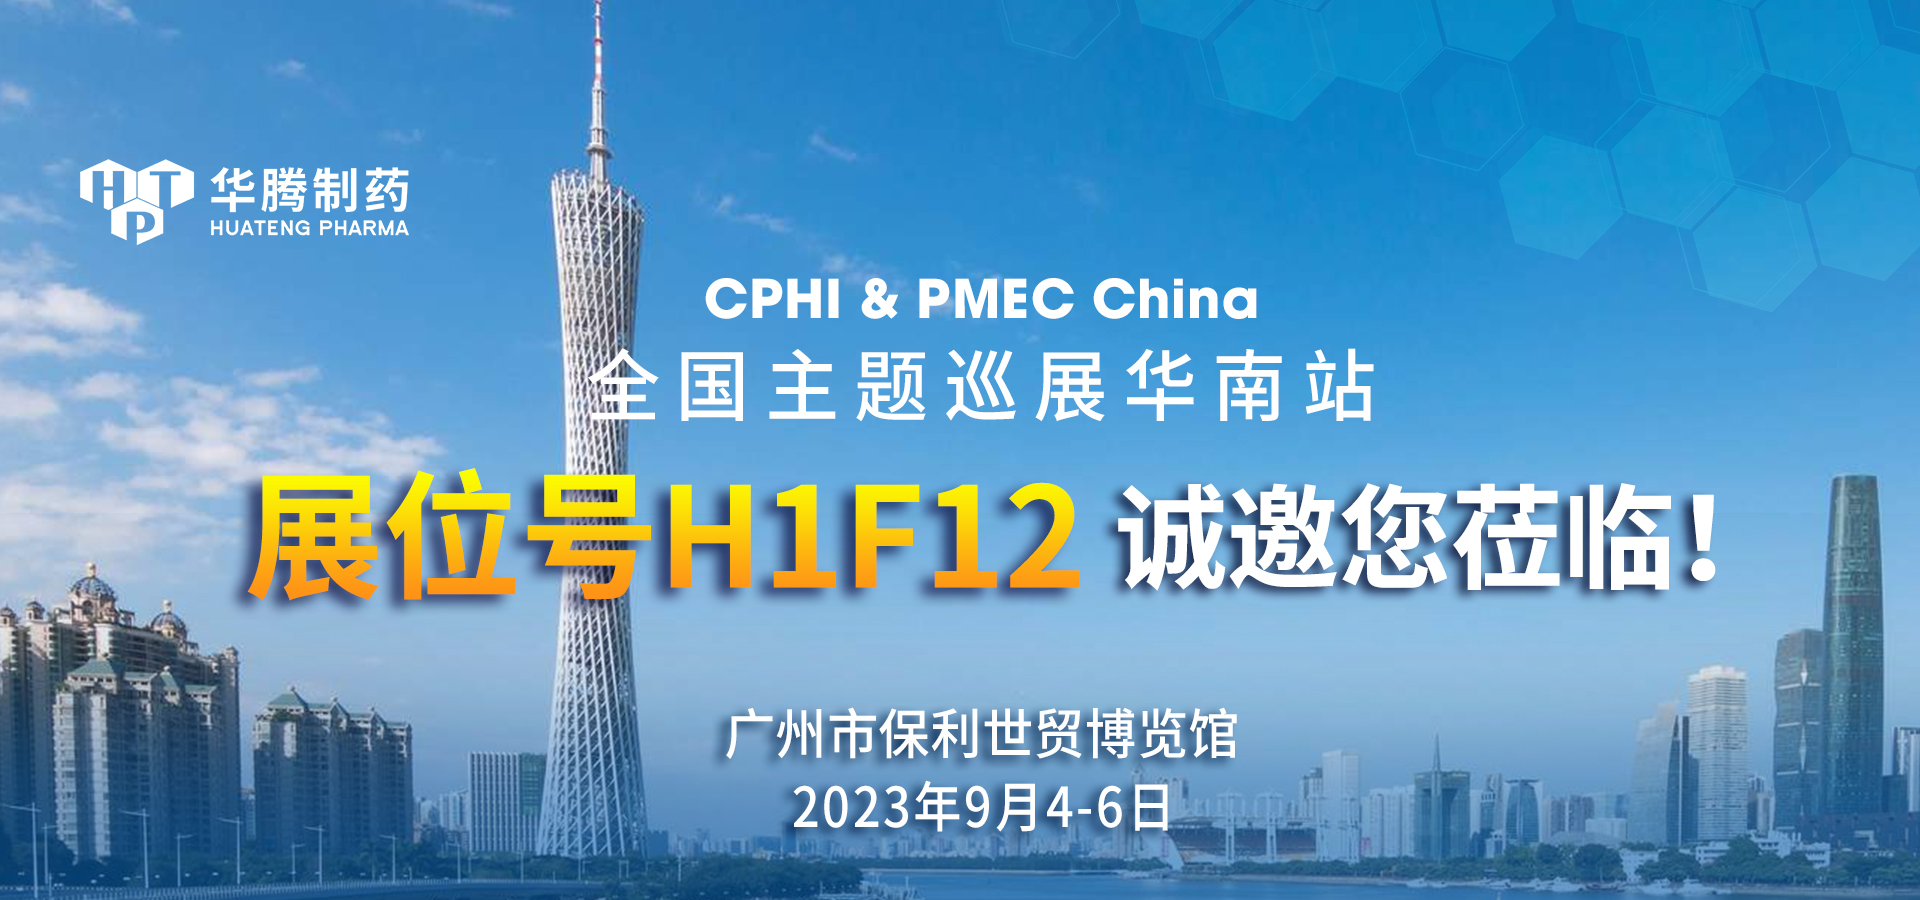 【展会邀约】新普京集团网站与您相约CPHI & PMEC China全国主题巡展华南站